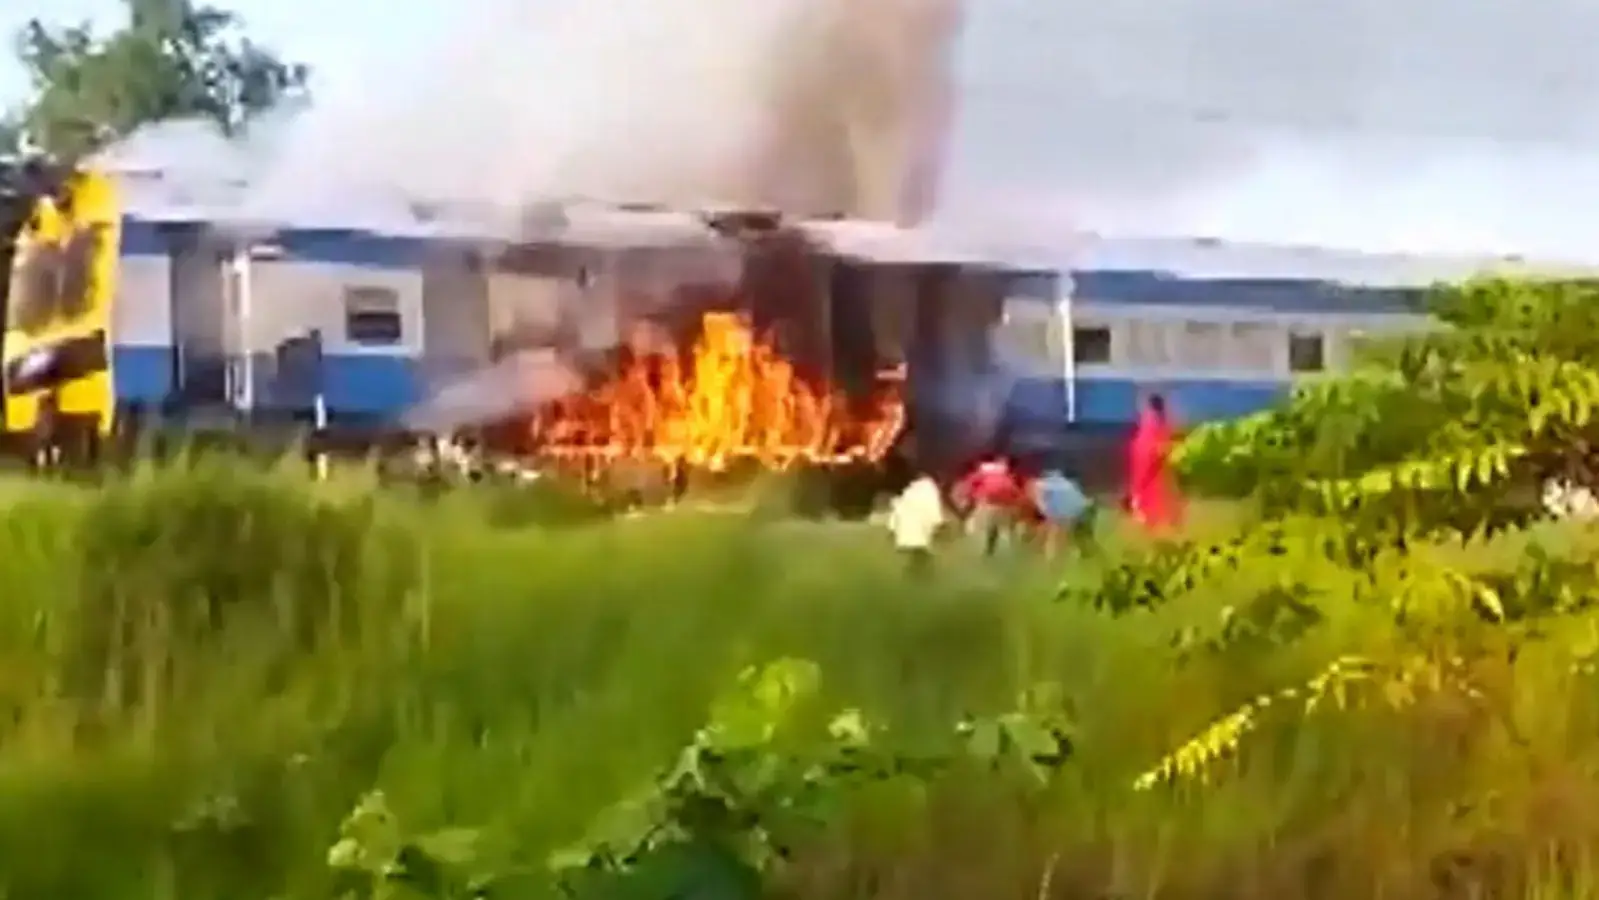  बिहार में ट्रेन में आग लग गई.  सभी यात्री सुरक्षित बताए गए|  वीडियो
